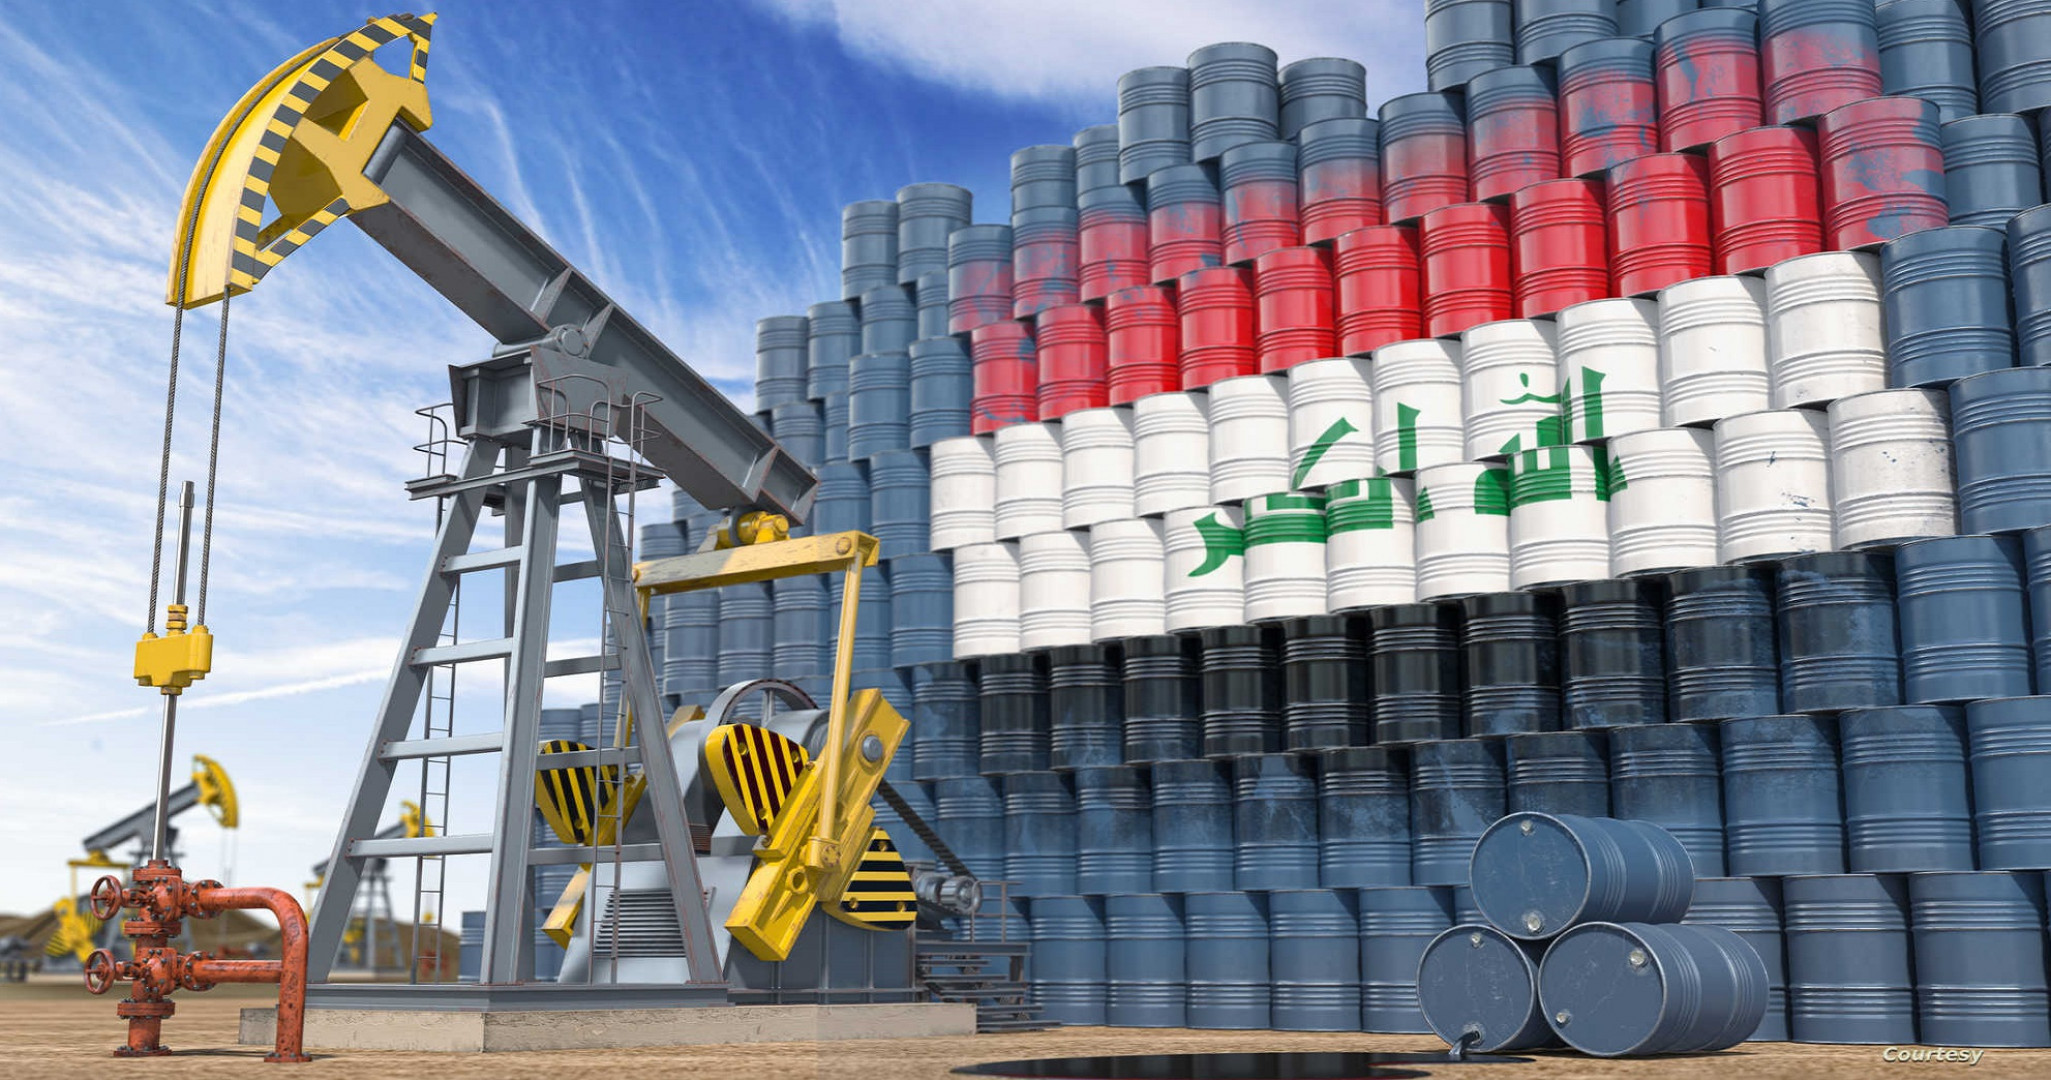 أكثر من 250 الف برميل يومياً معدل صادرات العراق النفطية لأمريكا في اسبوع